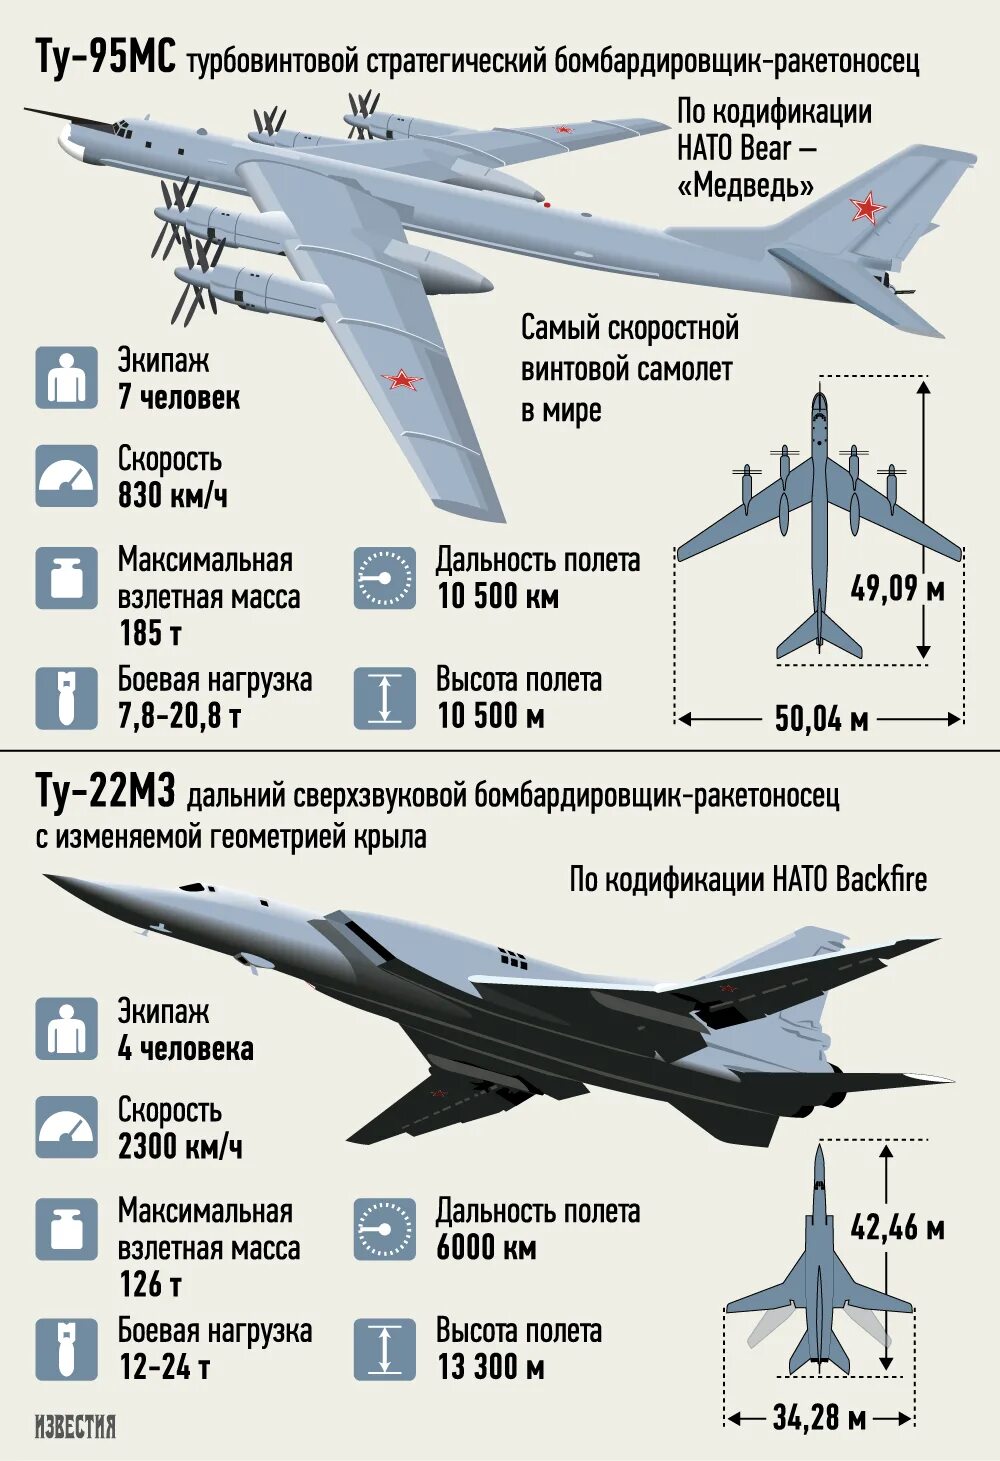 Ту-95 самолет технические характеристики. Ту-95мс характеристики стратегический. Самолет ту 95 МС характеристики. Ту-160м характеристики самолета. Ту 22м3 характеристики самолета вооружение